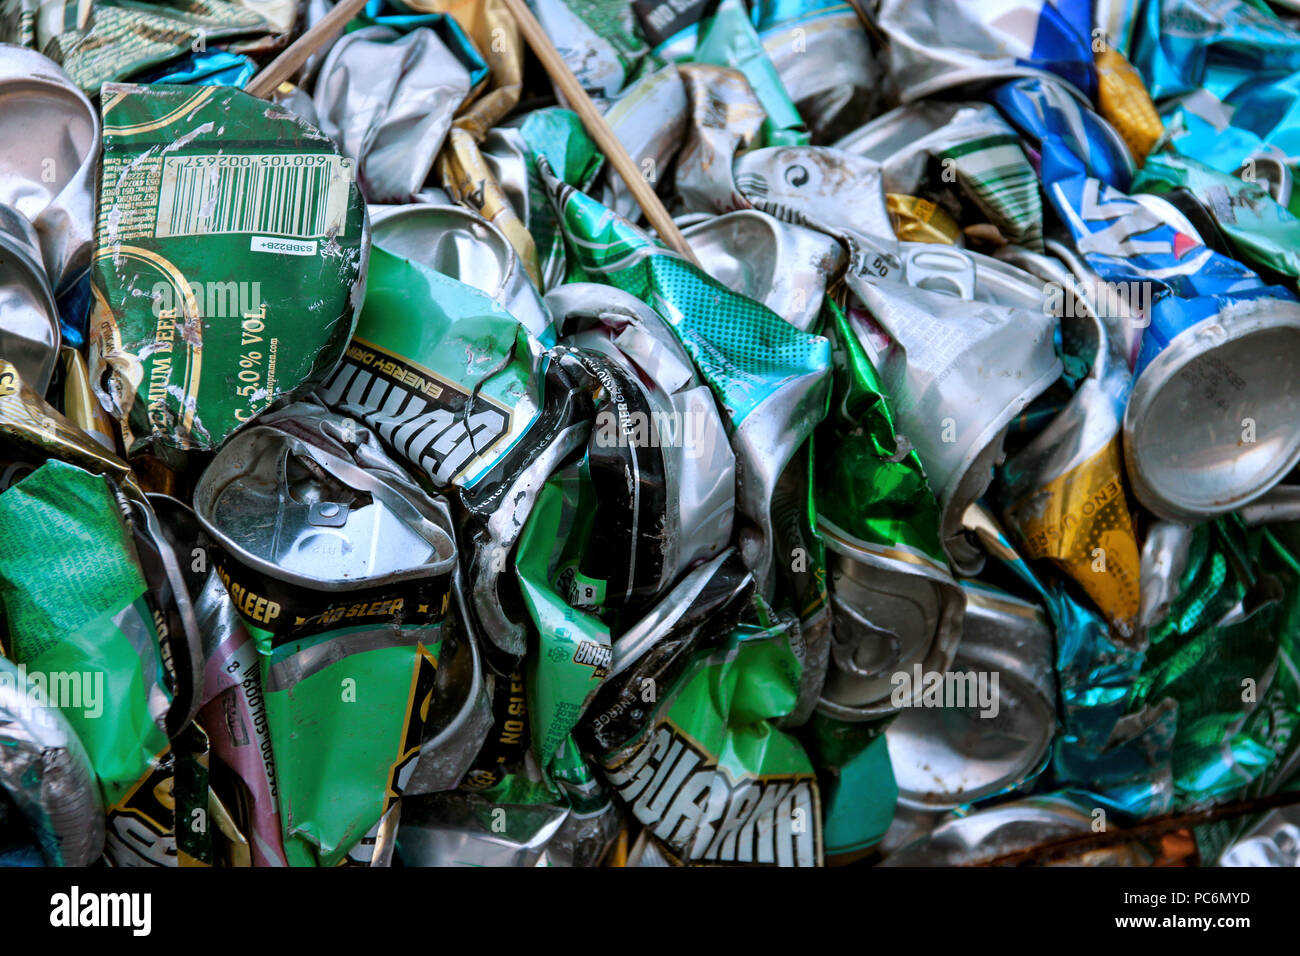 Belgrade, Serbie - 30 septembre 2016 : de nombreuses poubelles . Le tri des déchets. Écologie et recyclage de concept. Corbeille, Bin, détritus, sacs en plastique pile Banque D'Images